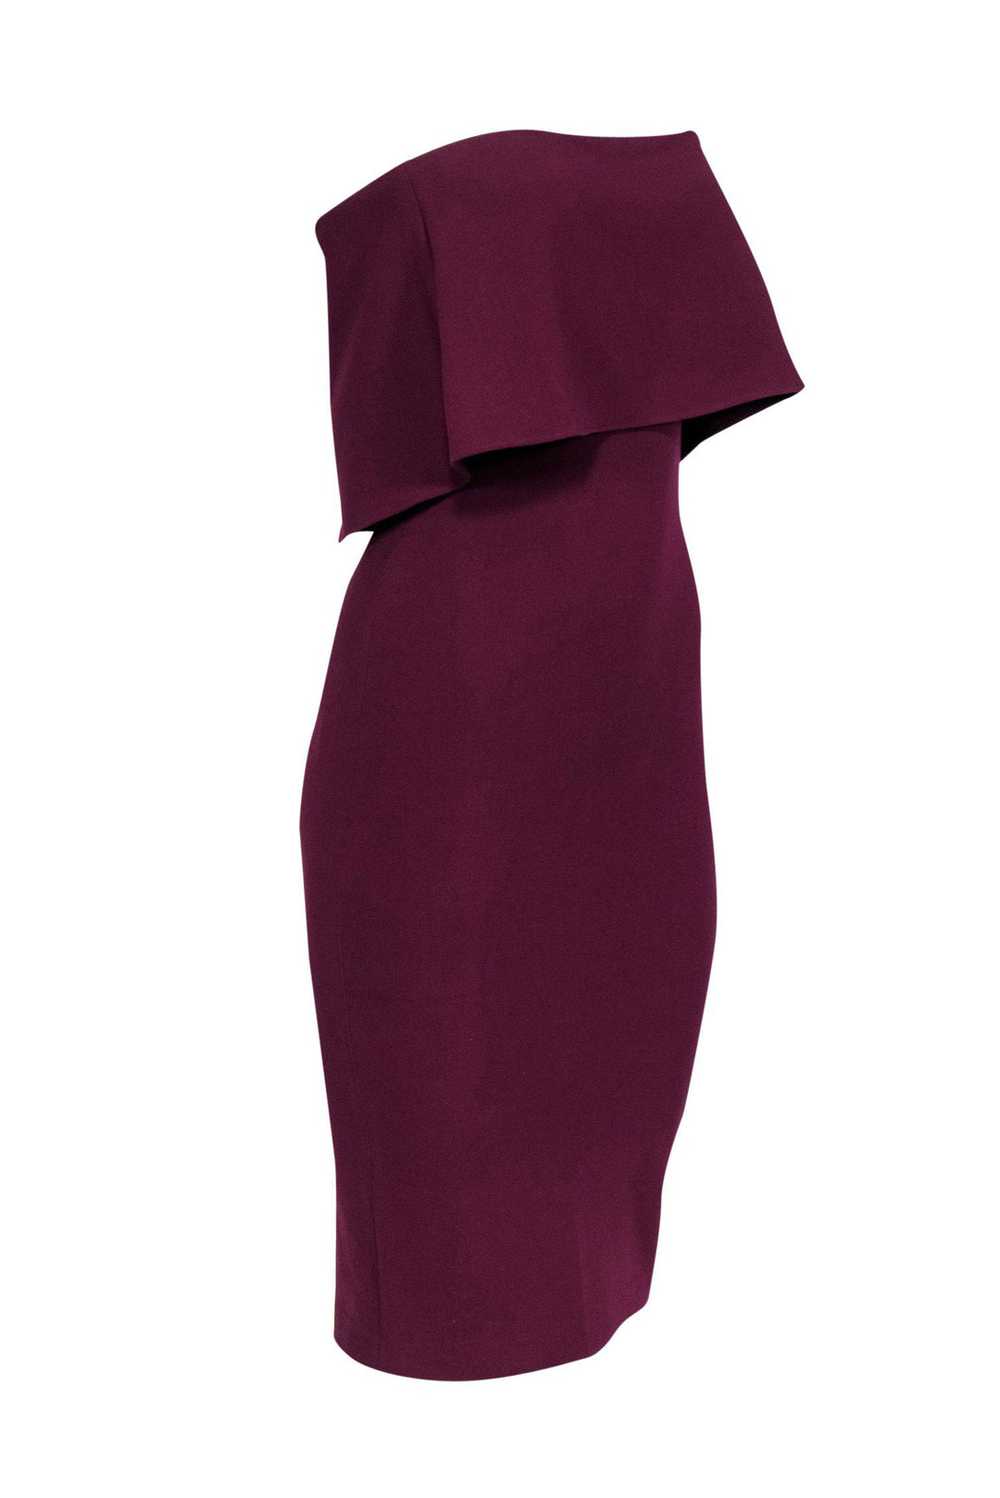 Likely - Plum Strapless Folded Bodice Midi Dress … - image 2